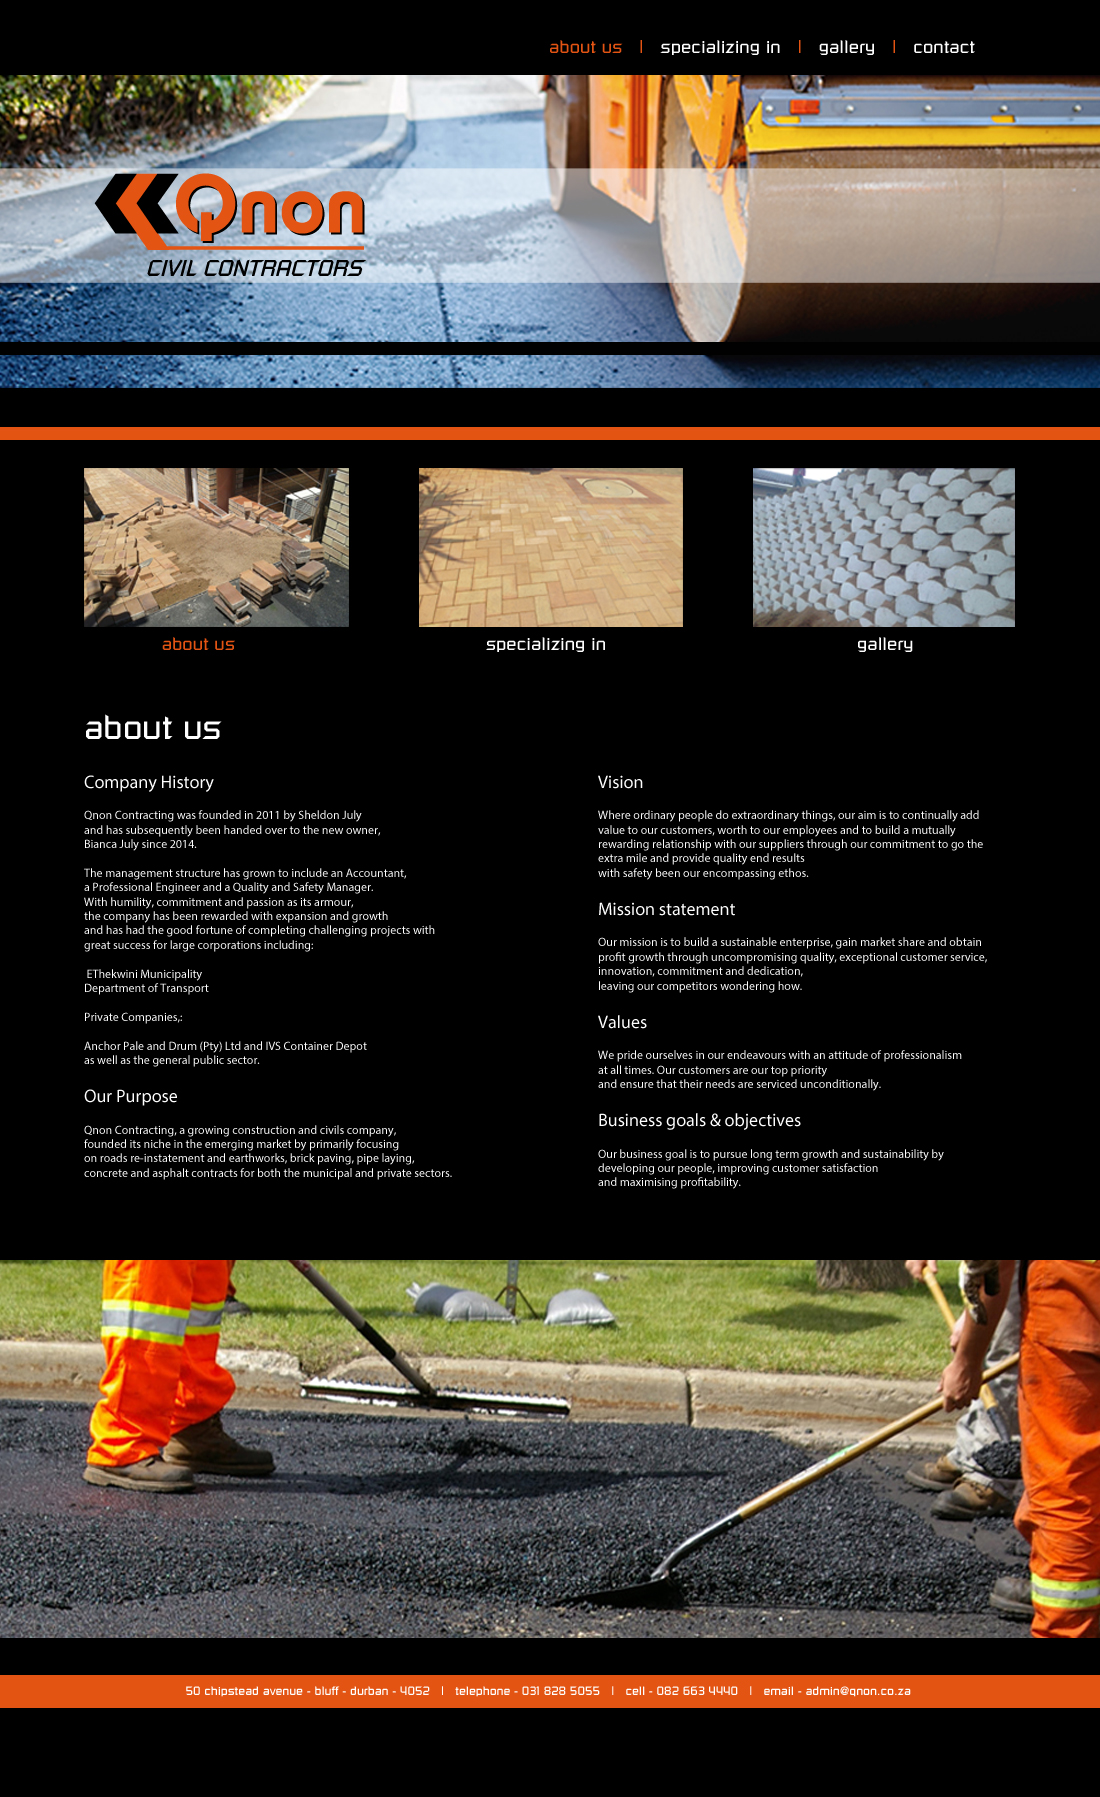 qnon | civil contractors | about us page